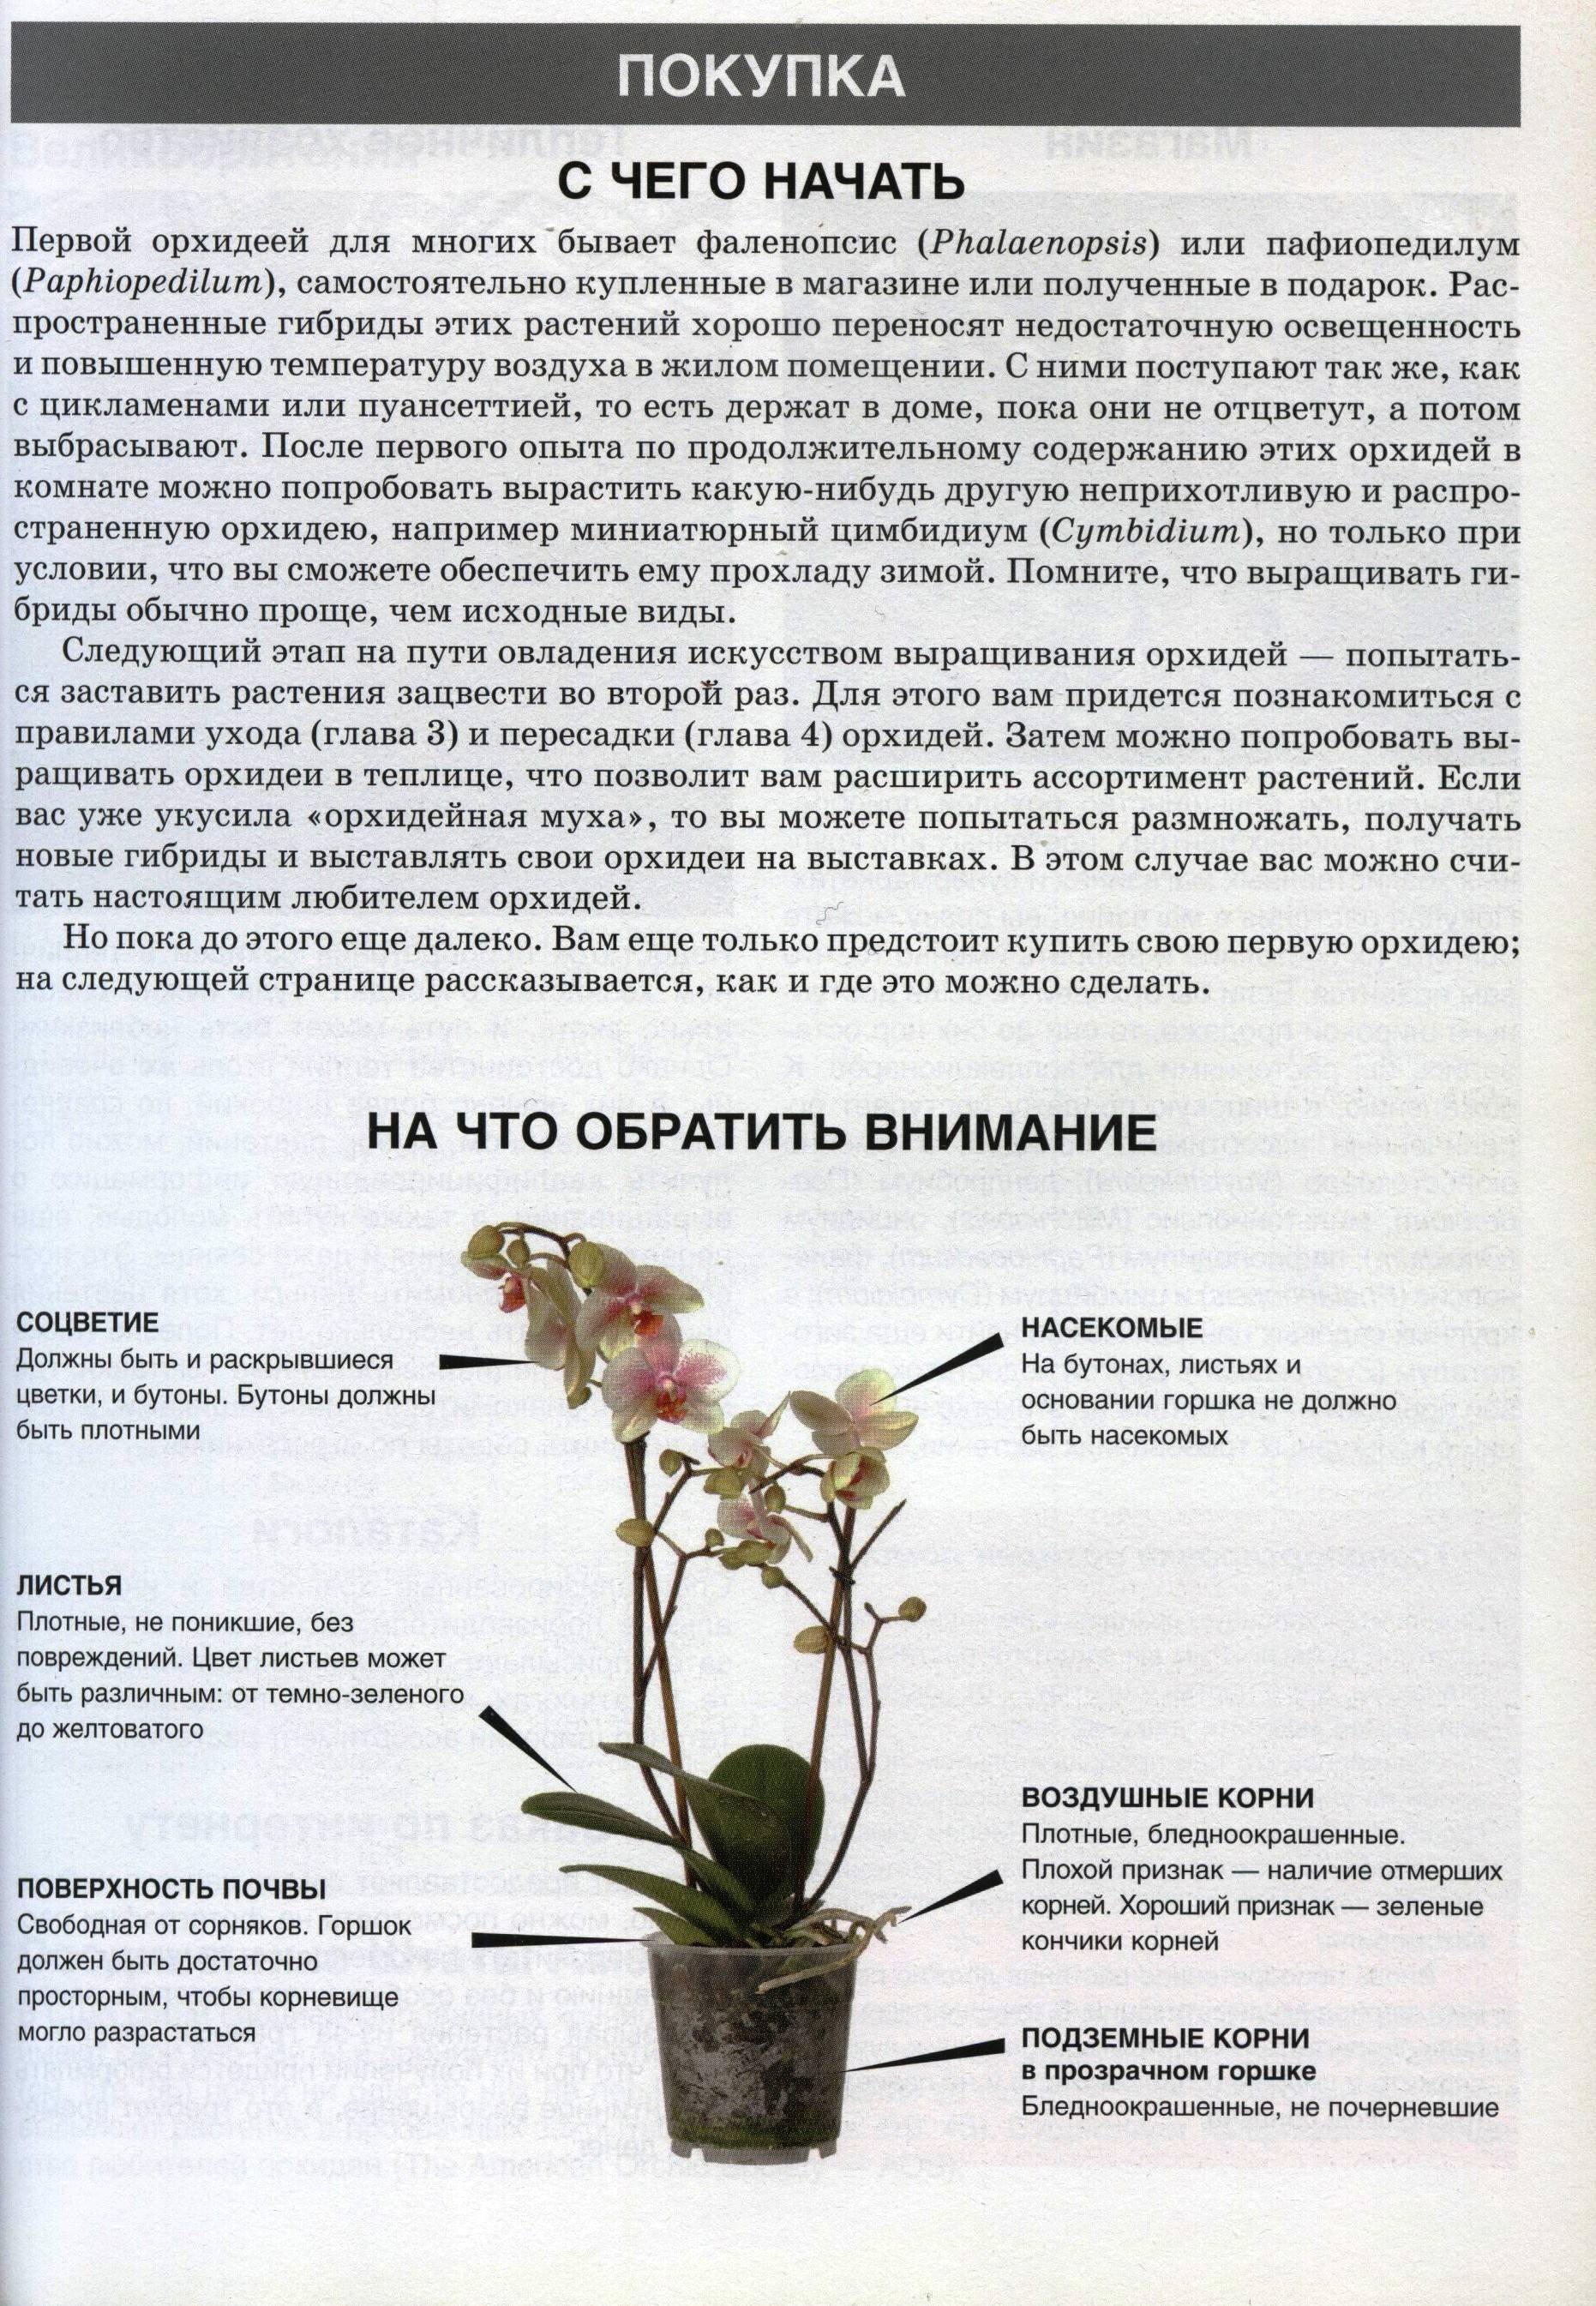 Орхидея фаленопсис: уход в домашних условиях, пересадка и размножение, правила полива - sadovnikam.ru